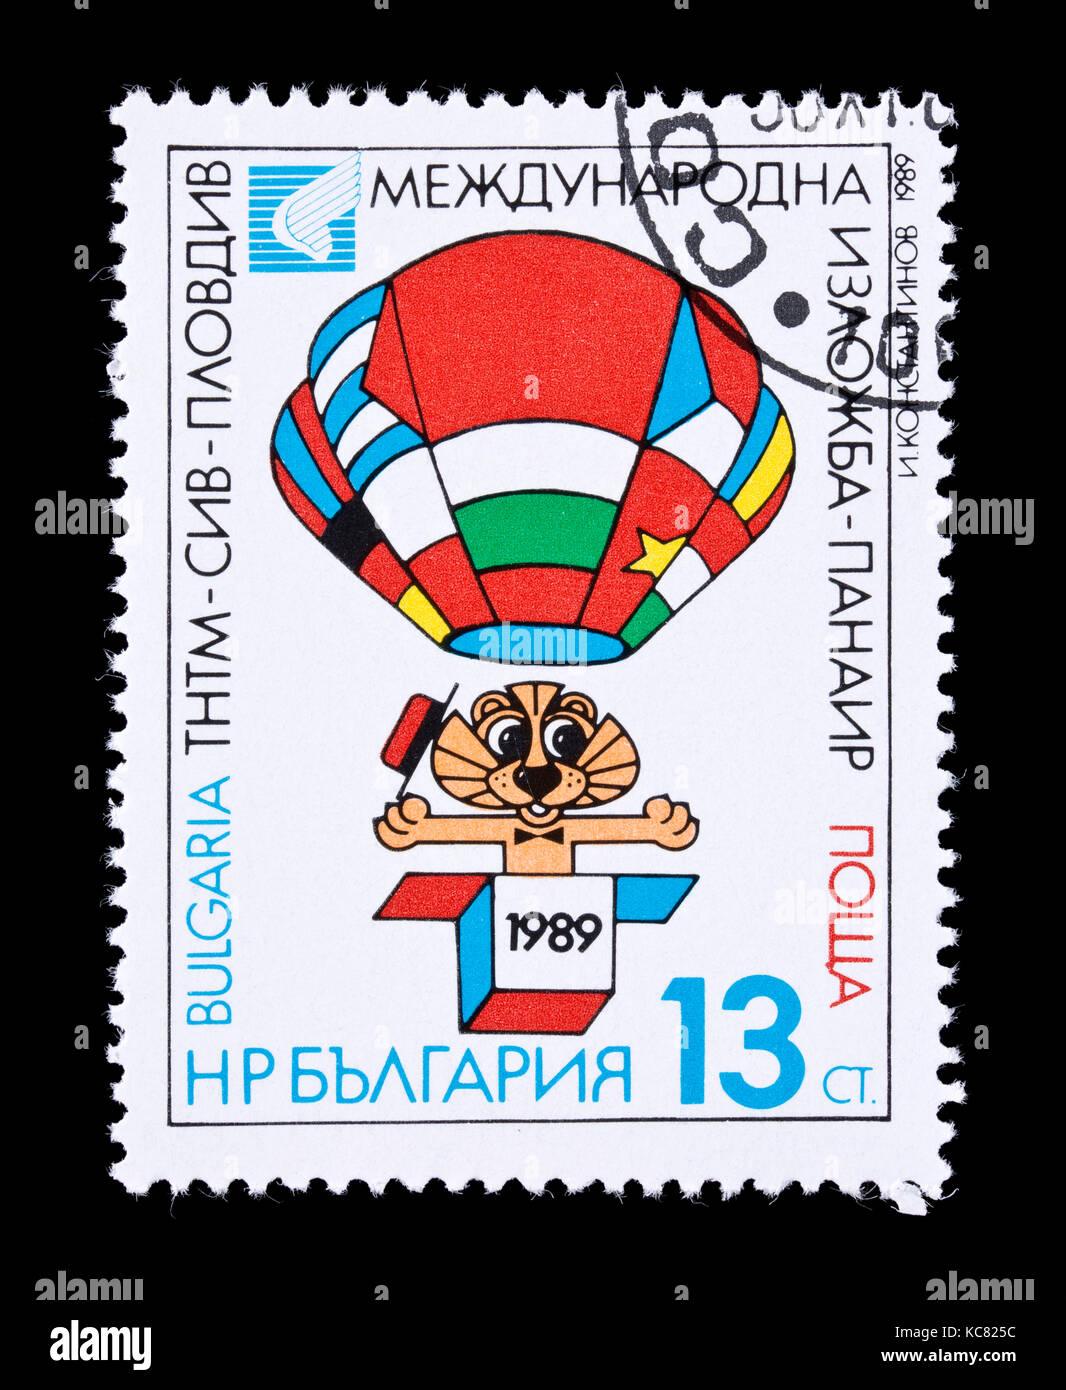 Briefmarke aus Bulgarien mit einem Heißluftballon, für die International Youth Science Fair, Plovdiv, 1989 ausgestellt. Stockfoto